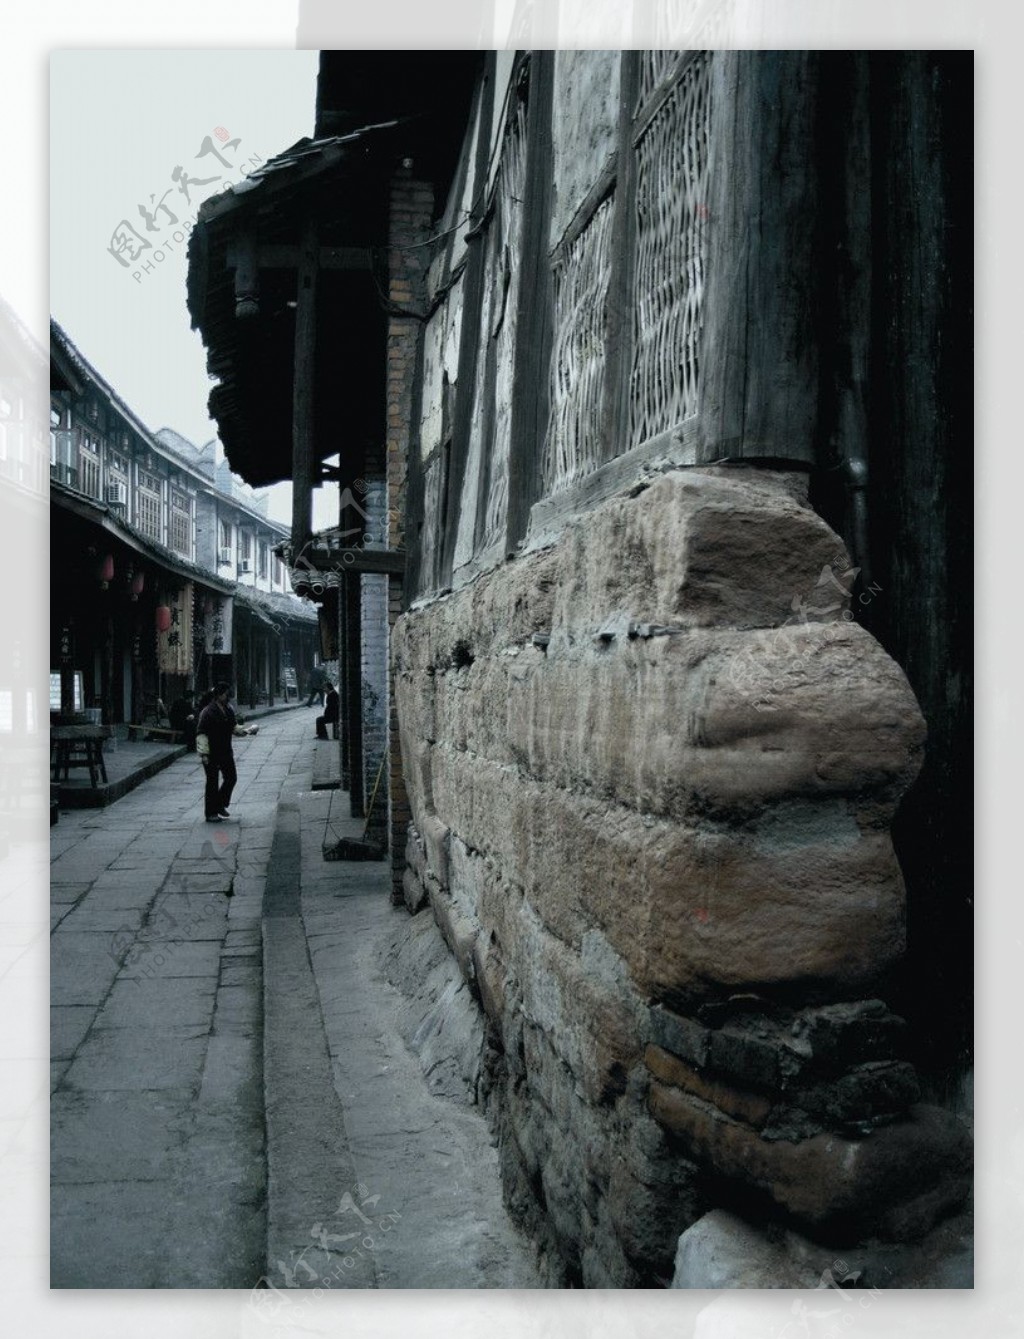 1700年历史的明清街坊 探访成都千年古镇黄龙溪